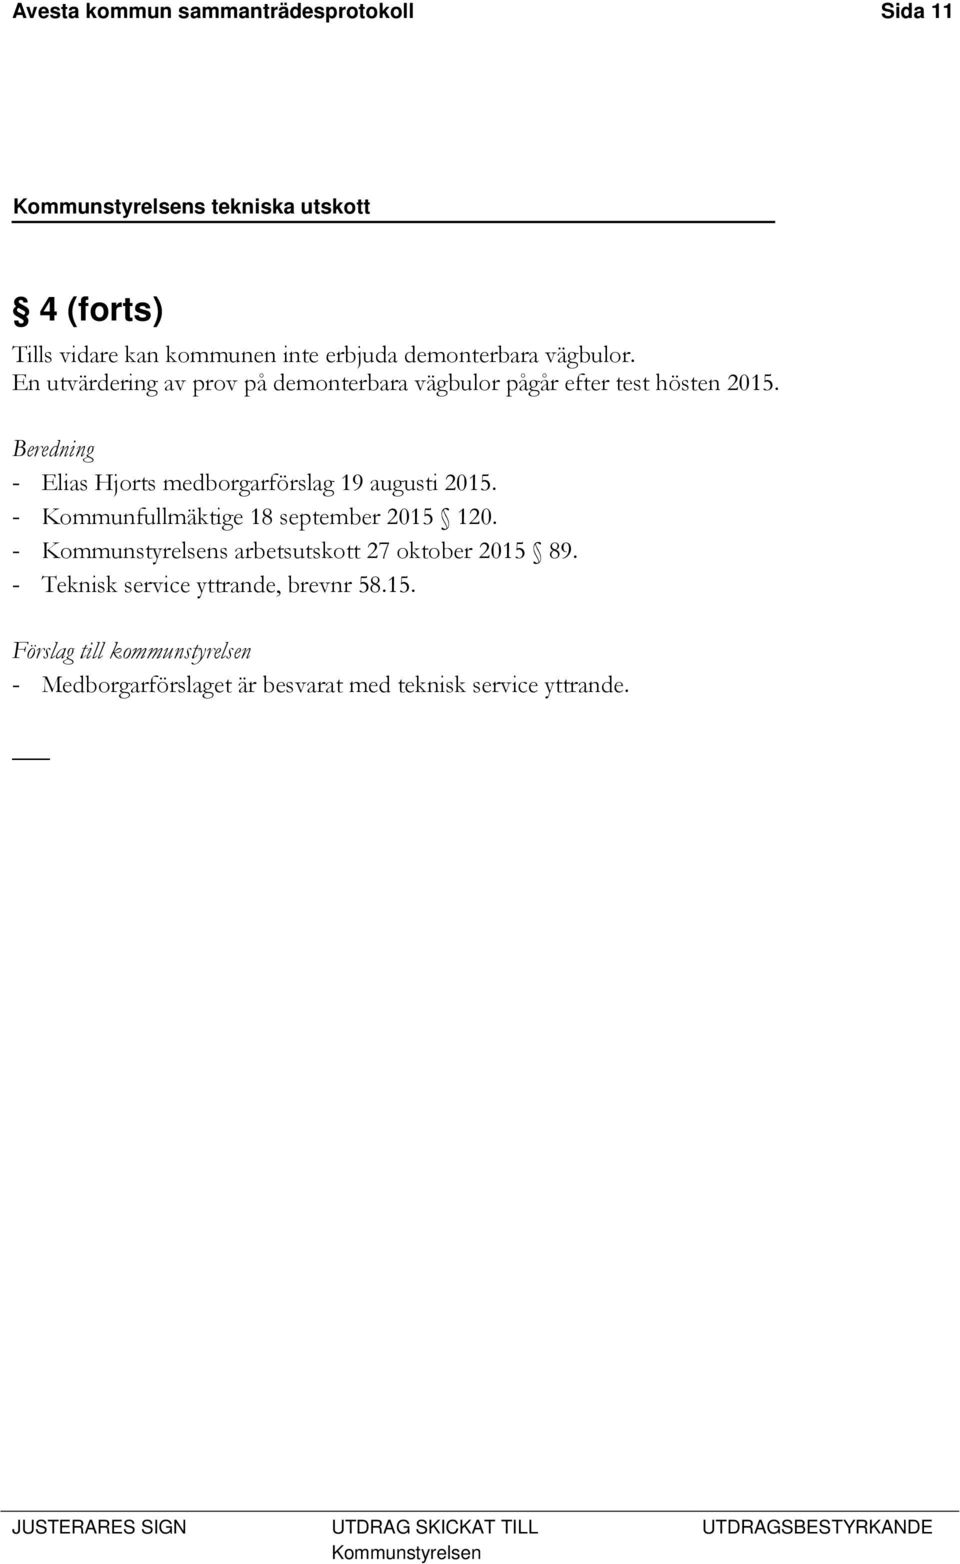 Beredning - Elias Hjorts medborgarförslag 19 augusti 2015. - Kommunfullmäktige 18 september 2015 120.